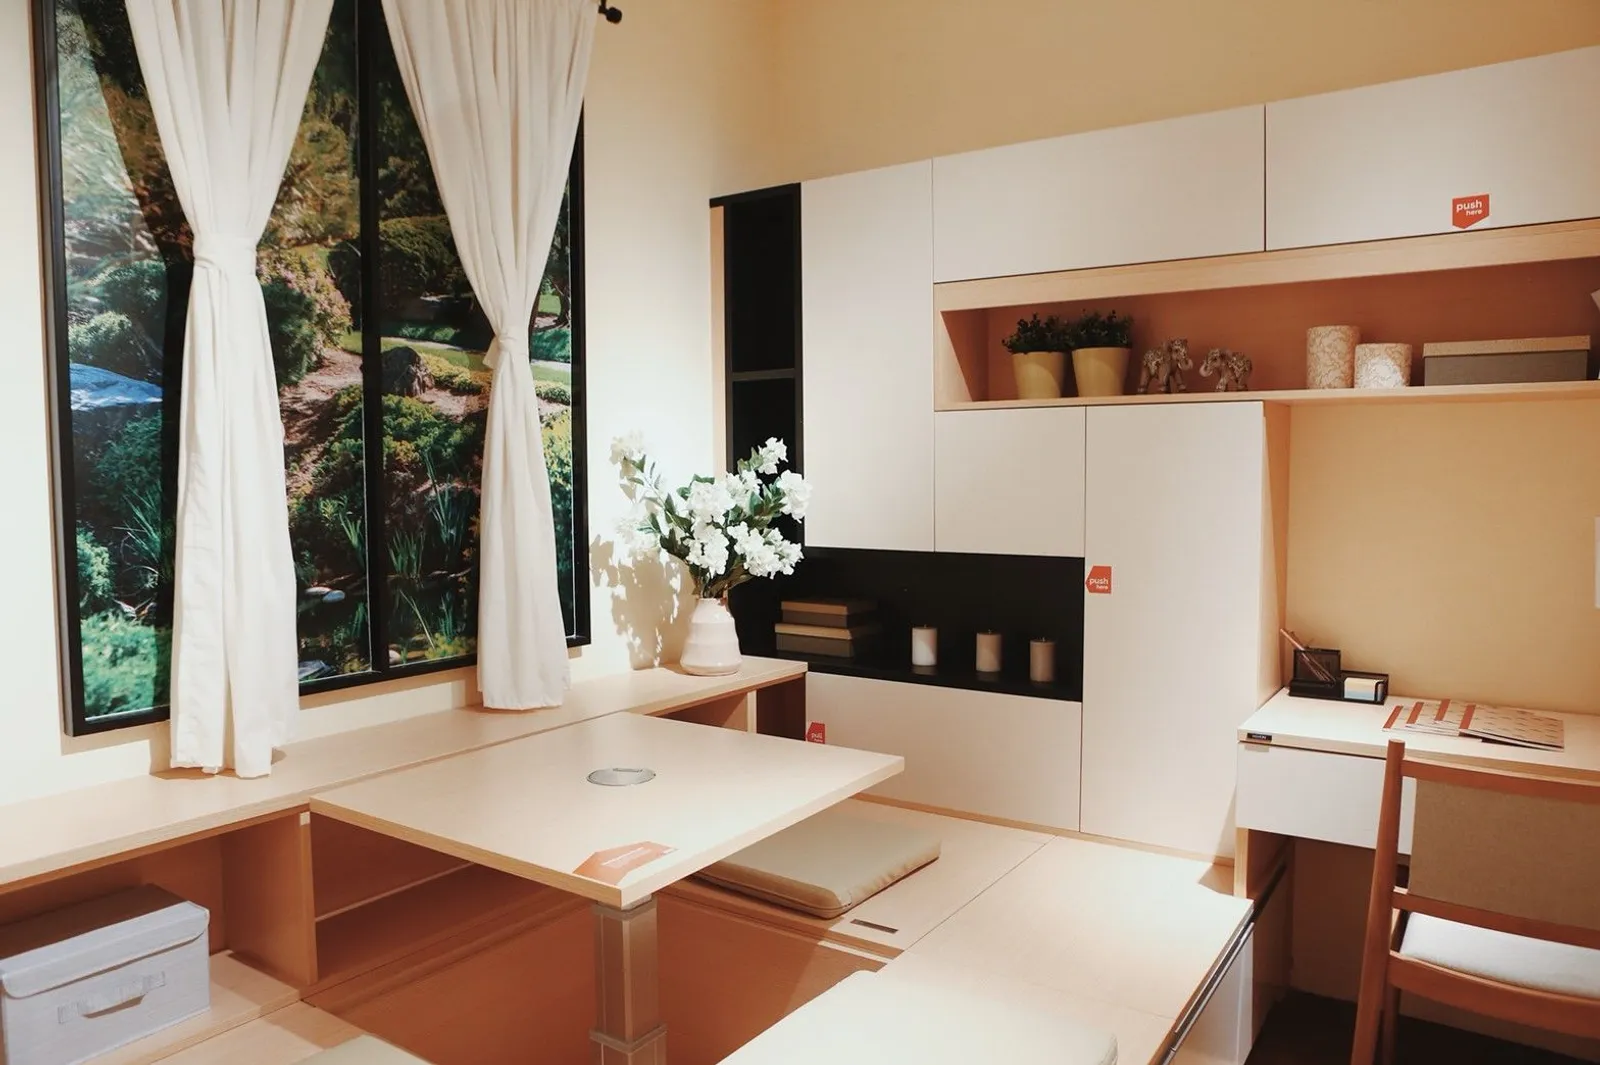 Simak Yuk Inspirasi Desain Furnitur Multifungsi di Ruang Minimalis